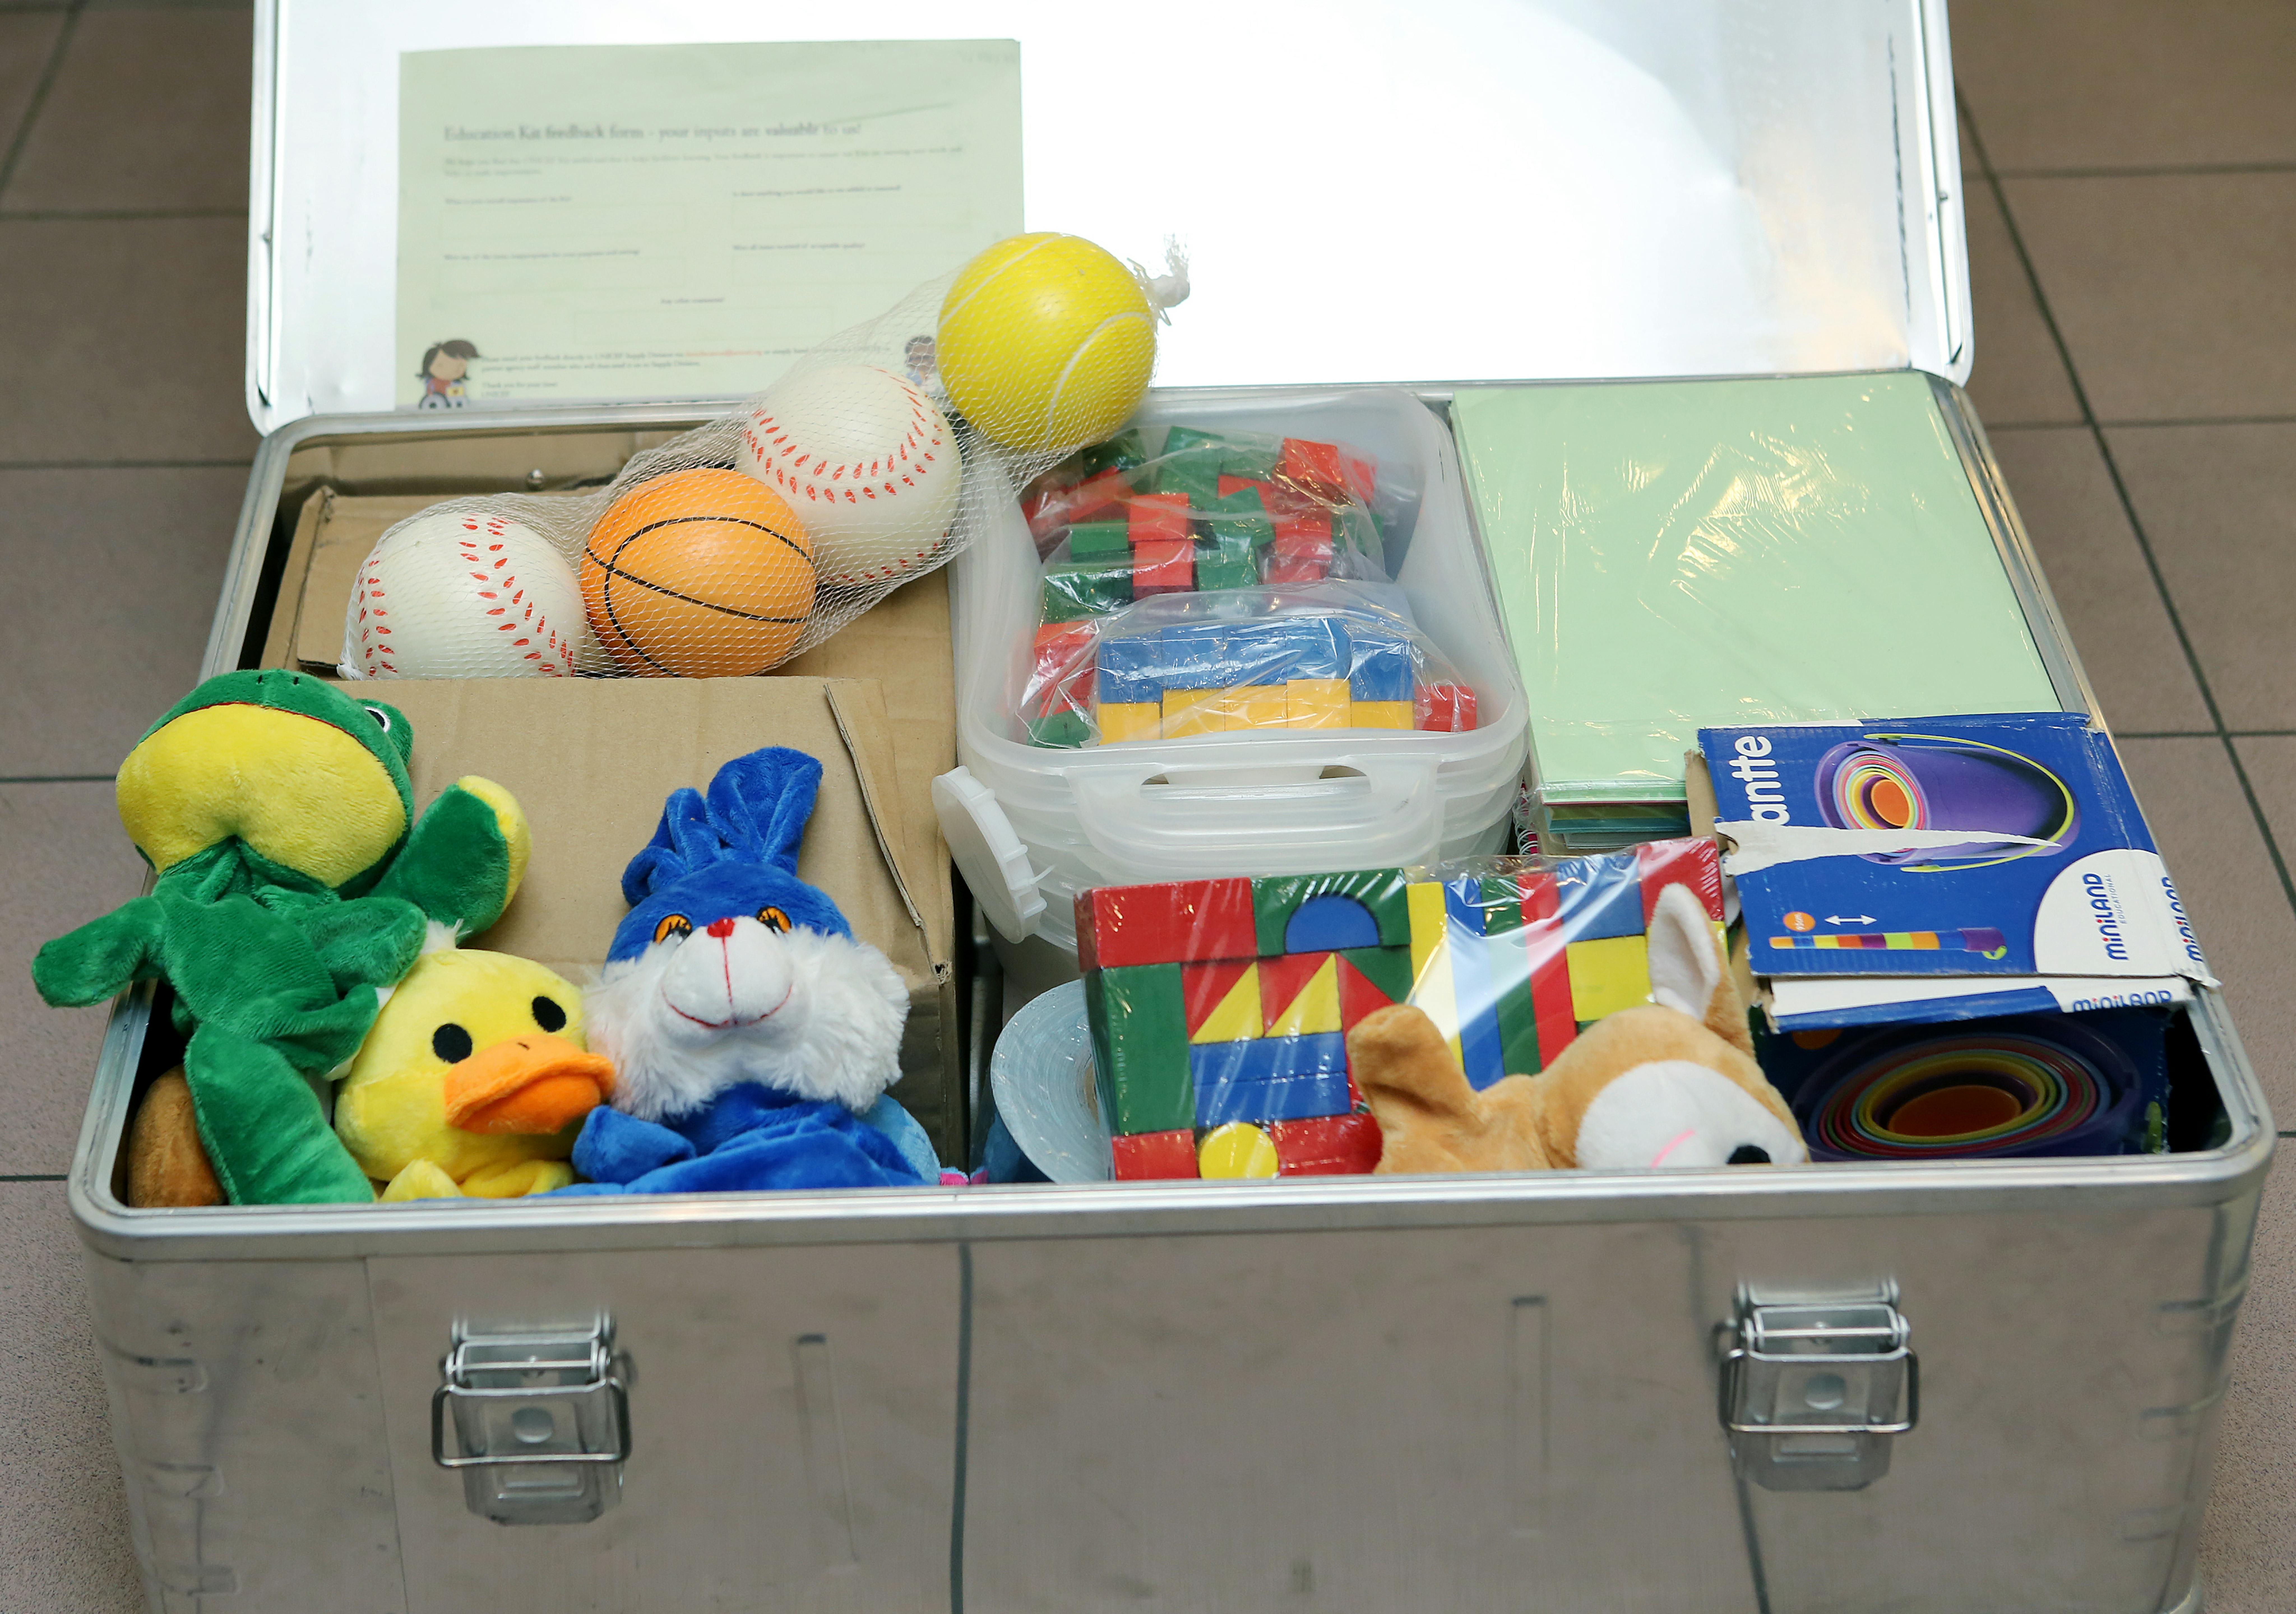 L'UNICEF ha consegnato kit School-in-a-Box a numerose scuole per aiutarle durante la sospensione scolastica causata dalla pandemia da Covid